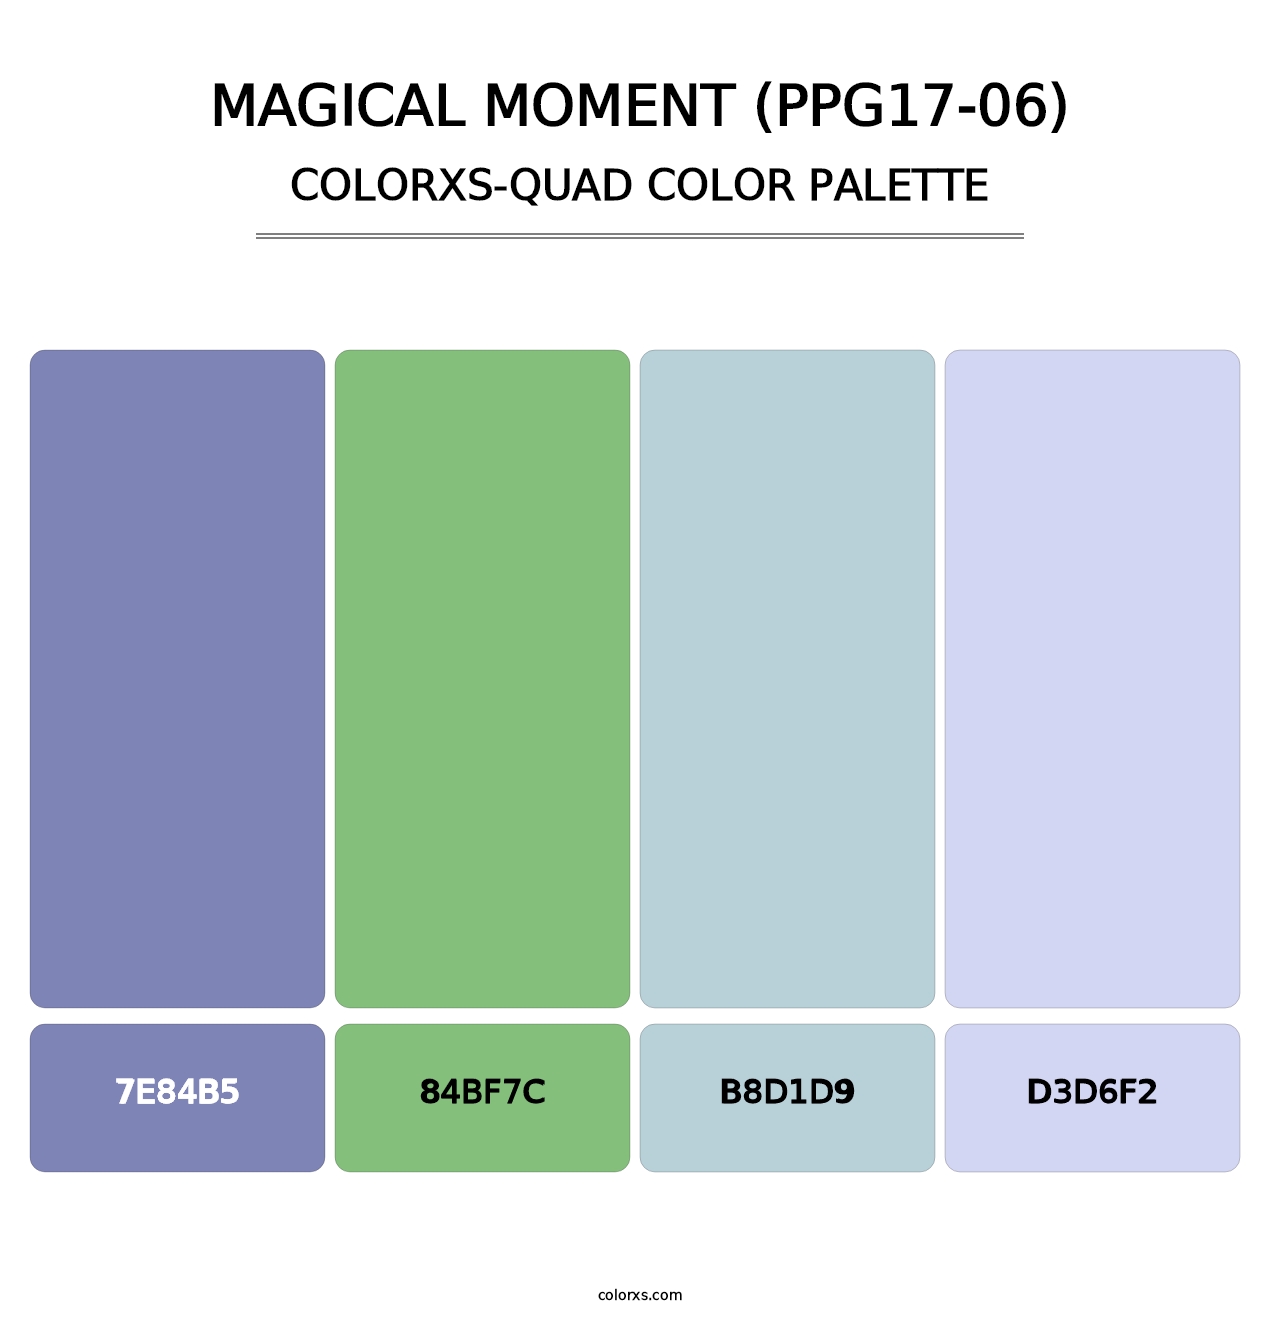 Magical Moment (PPG17-06) - Colorxs Quad Palette